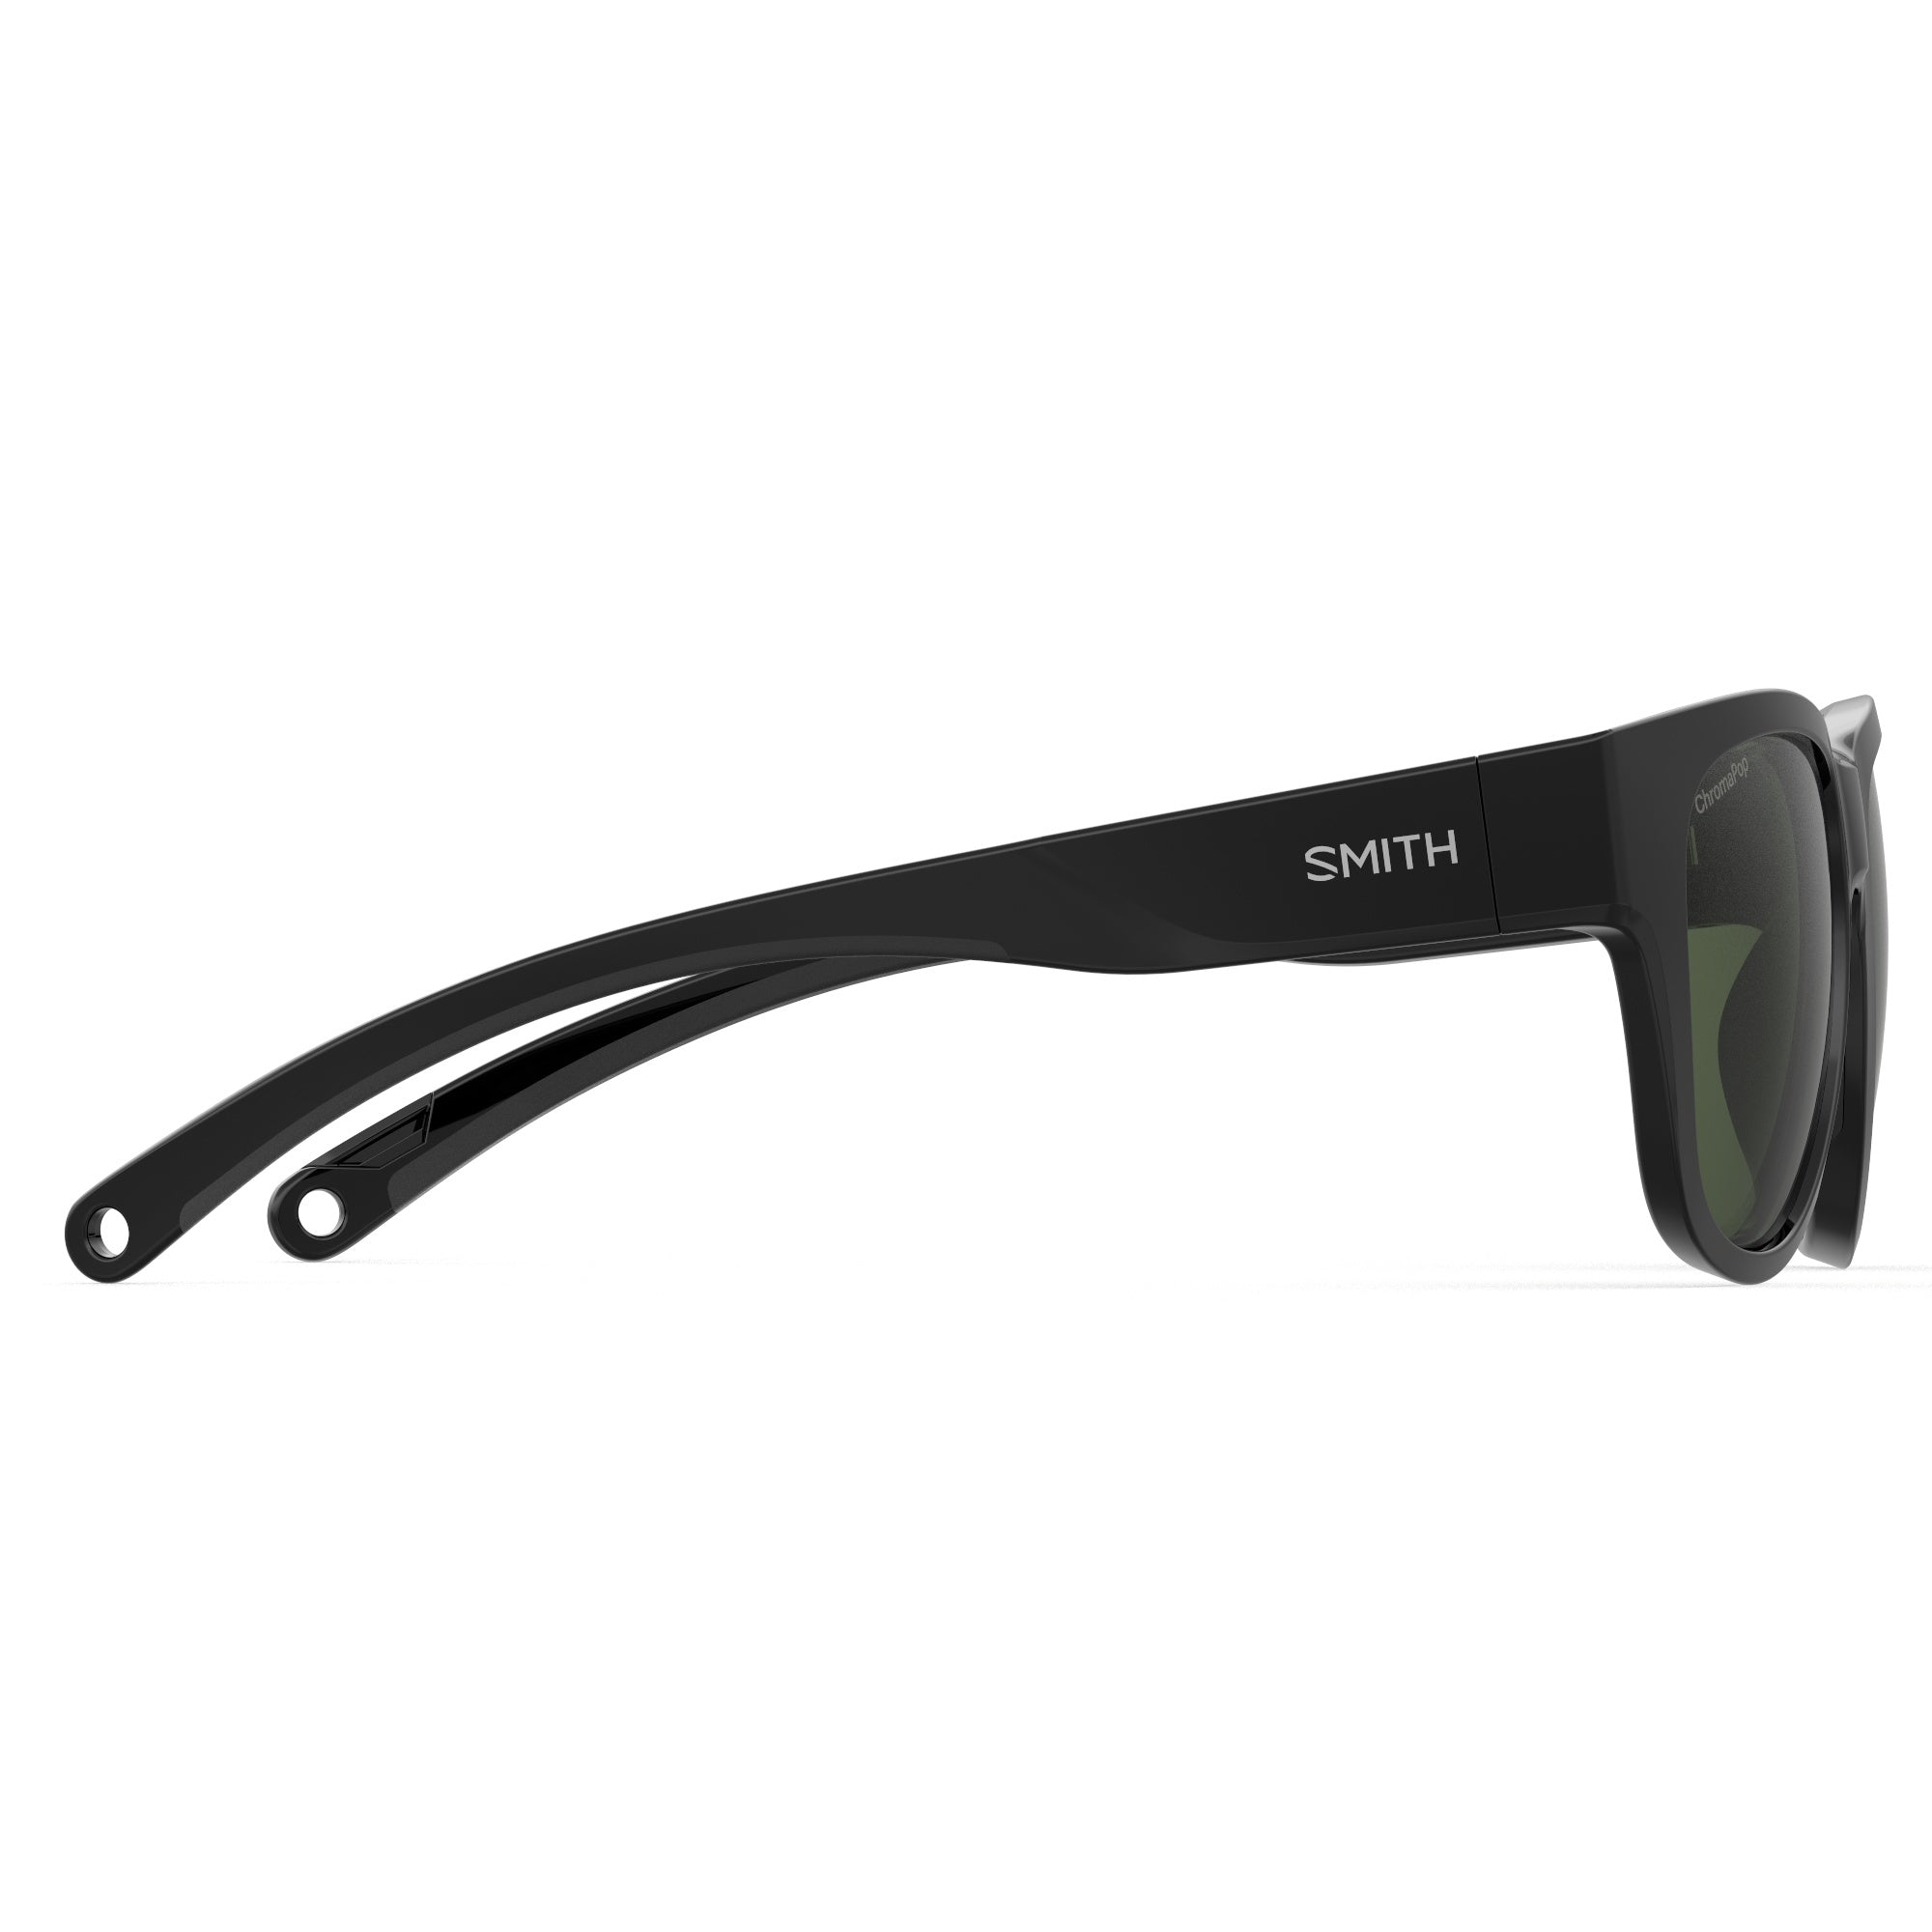 Smith Rockaway Sunglasses - Polarized Chromapop